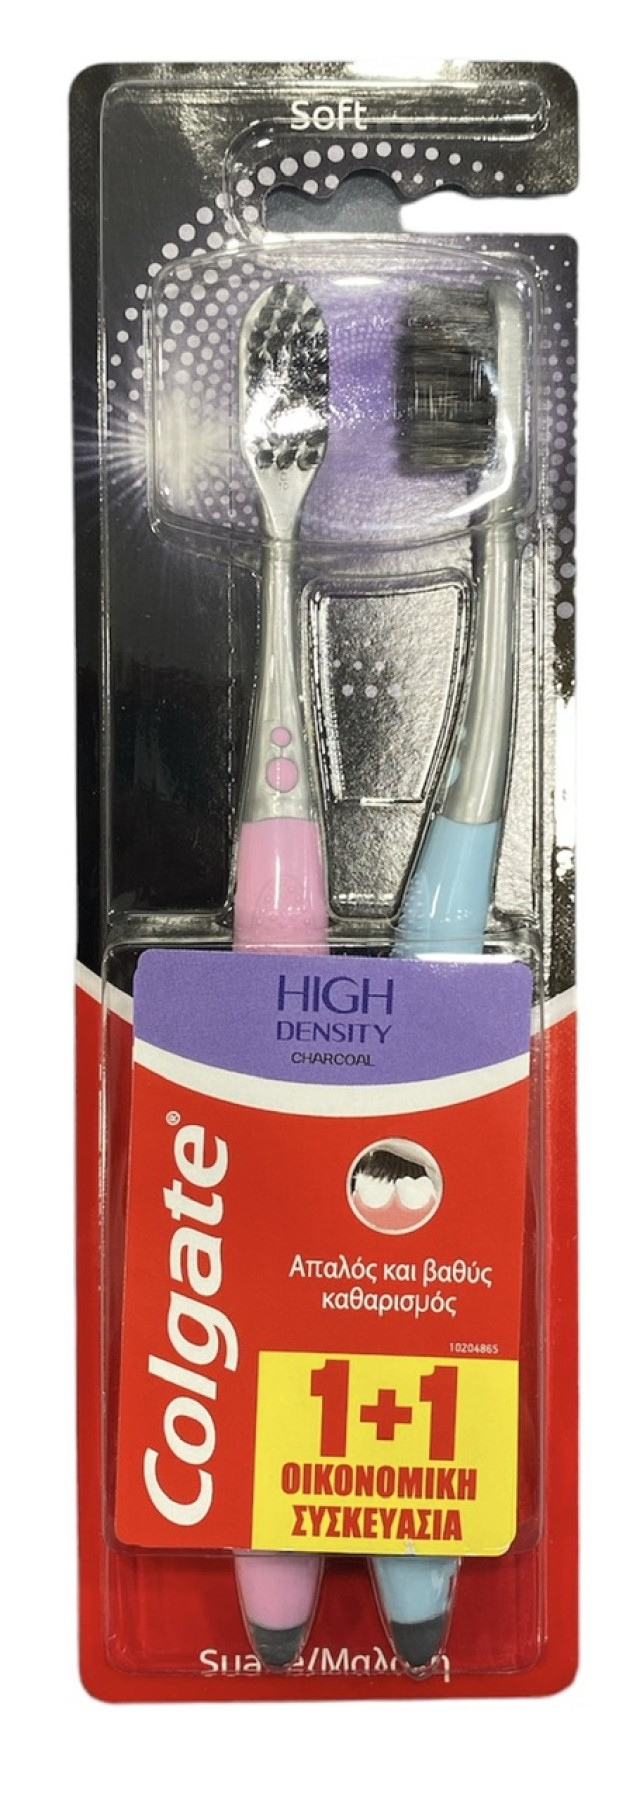 Colgate Promo Οδοντόβουρτσα Soft High Density Charcoal Χρώμα Ροζ και Γαλάζια, 1 + 1 ΔΩΡΟ